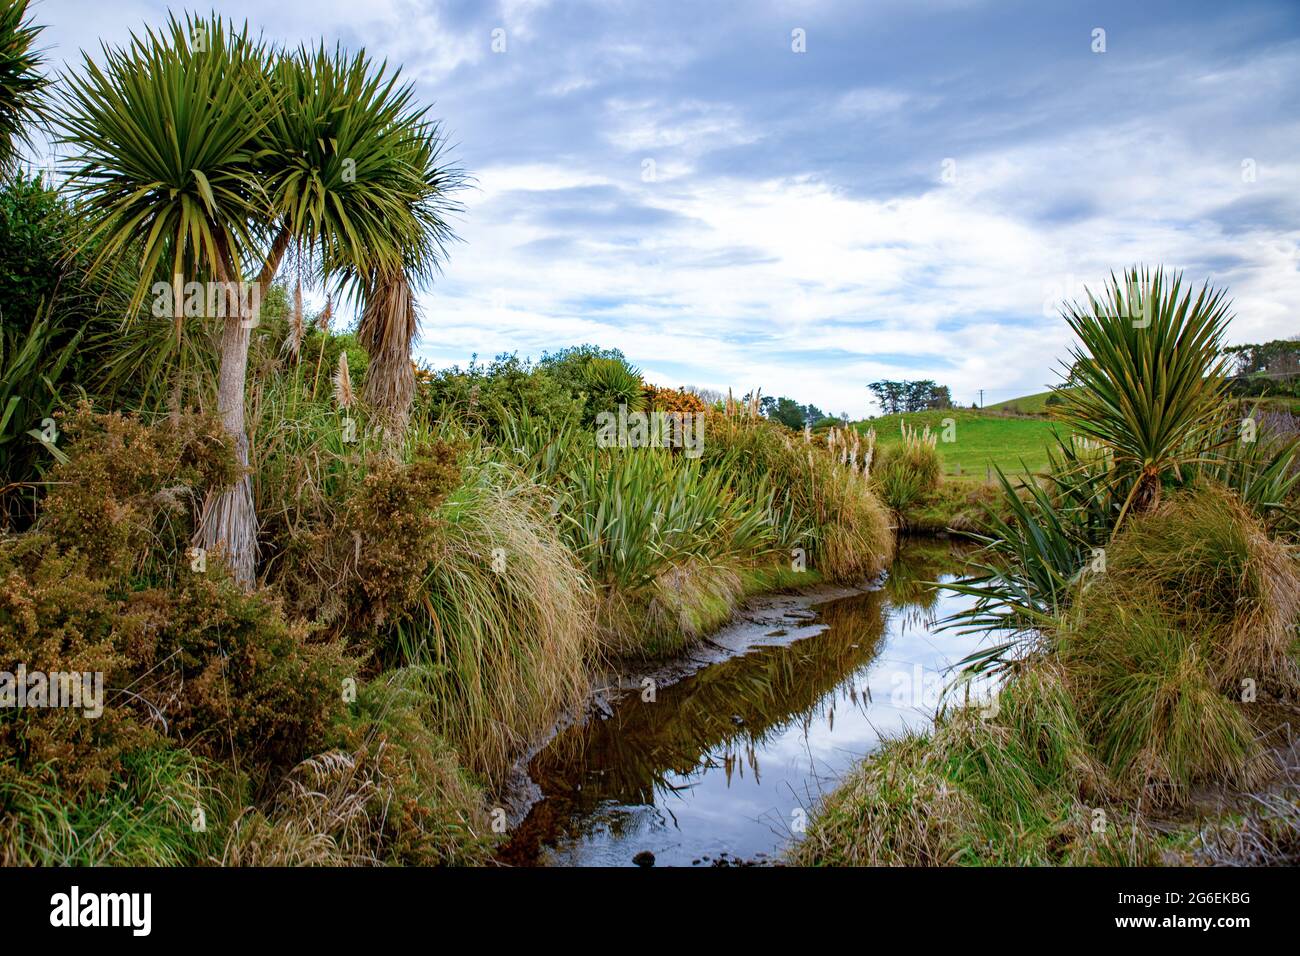 Einheimische Pflanzen und Bäume werden entlang Farmzäune und an Wasserwegen gepflanzt, um Vögeln und Ungeziefern in Neuseeland Lebensraum und Platz zu bieten Stockfoto